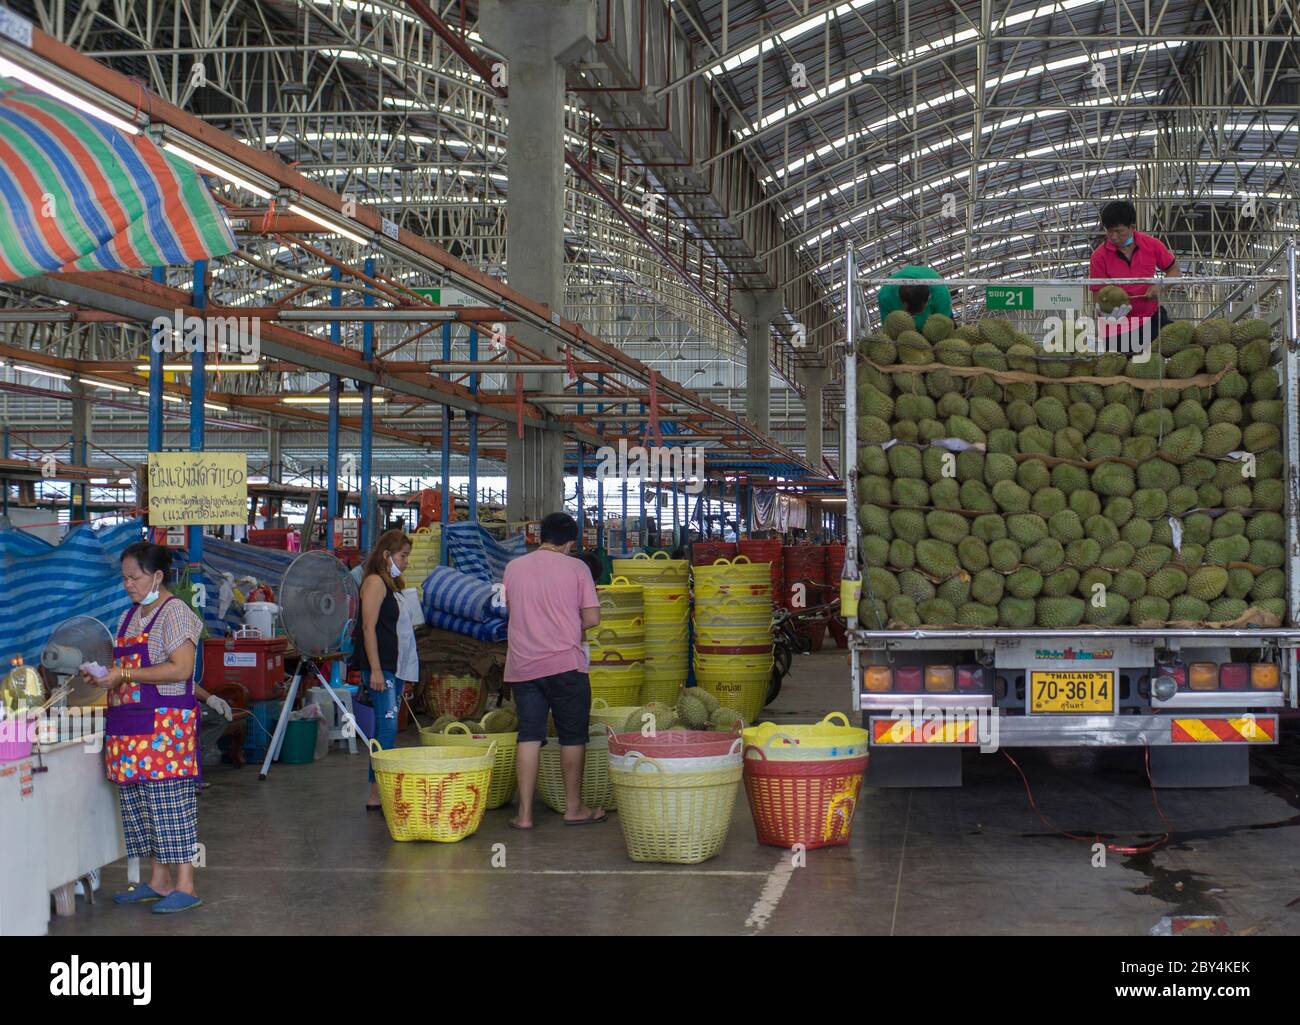 Les gens faisaient décharger les fruits duriens sur le marché, Bangkok Thaïlande Banque D'Images